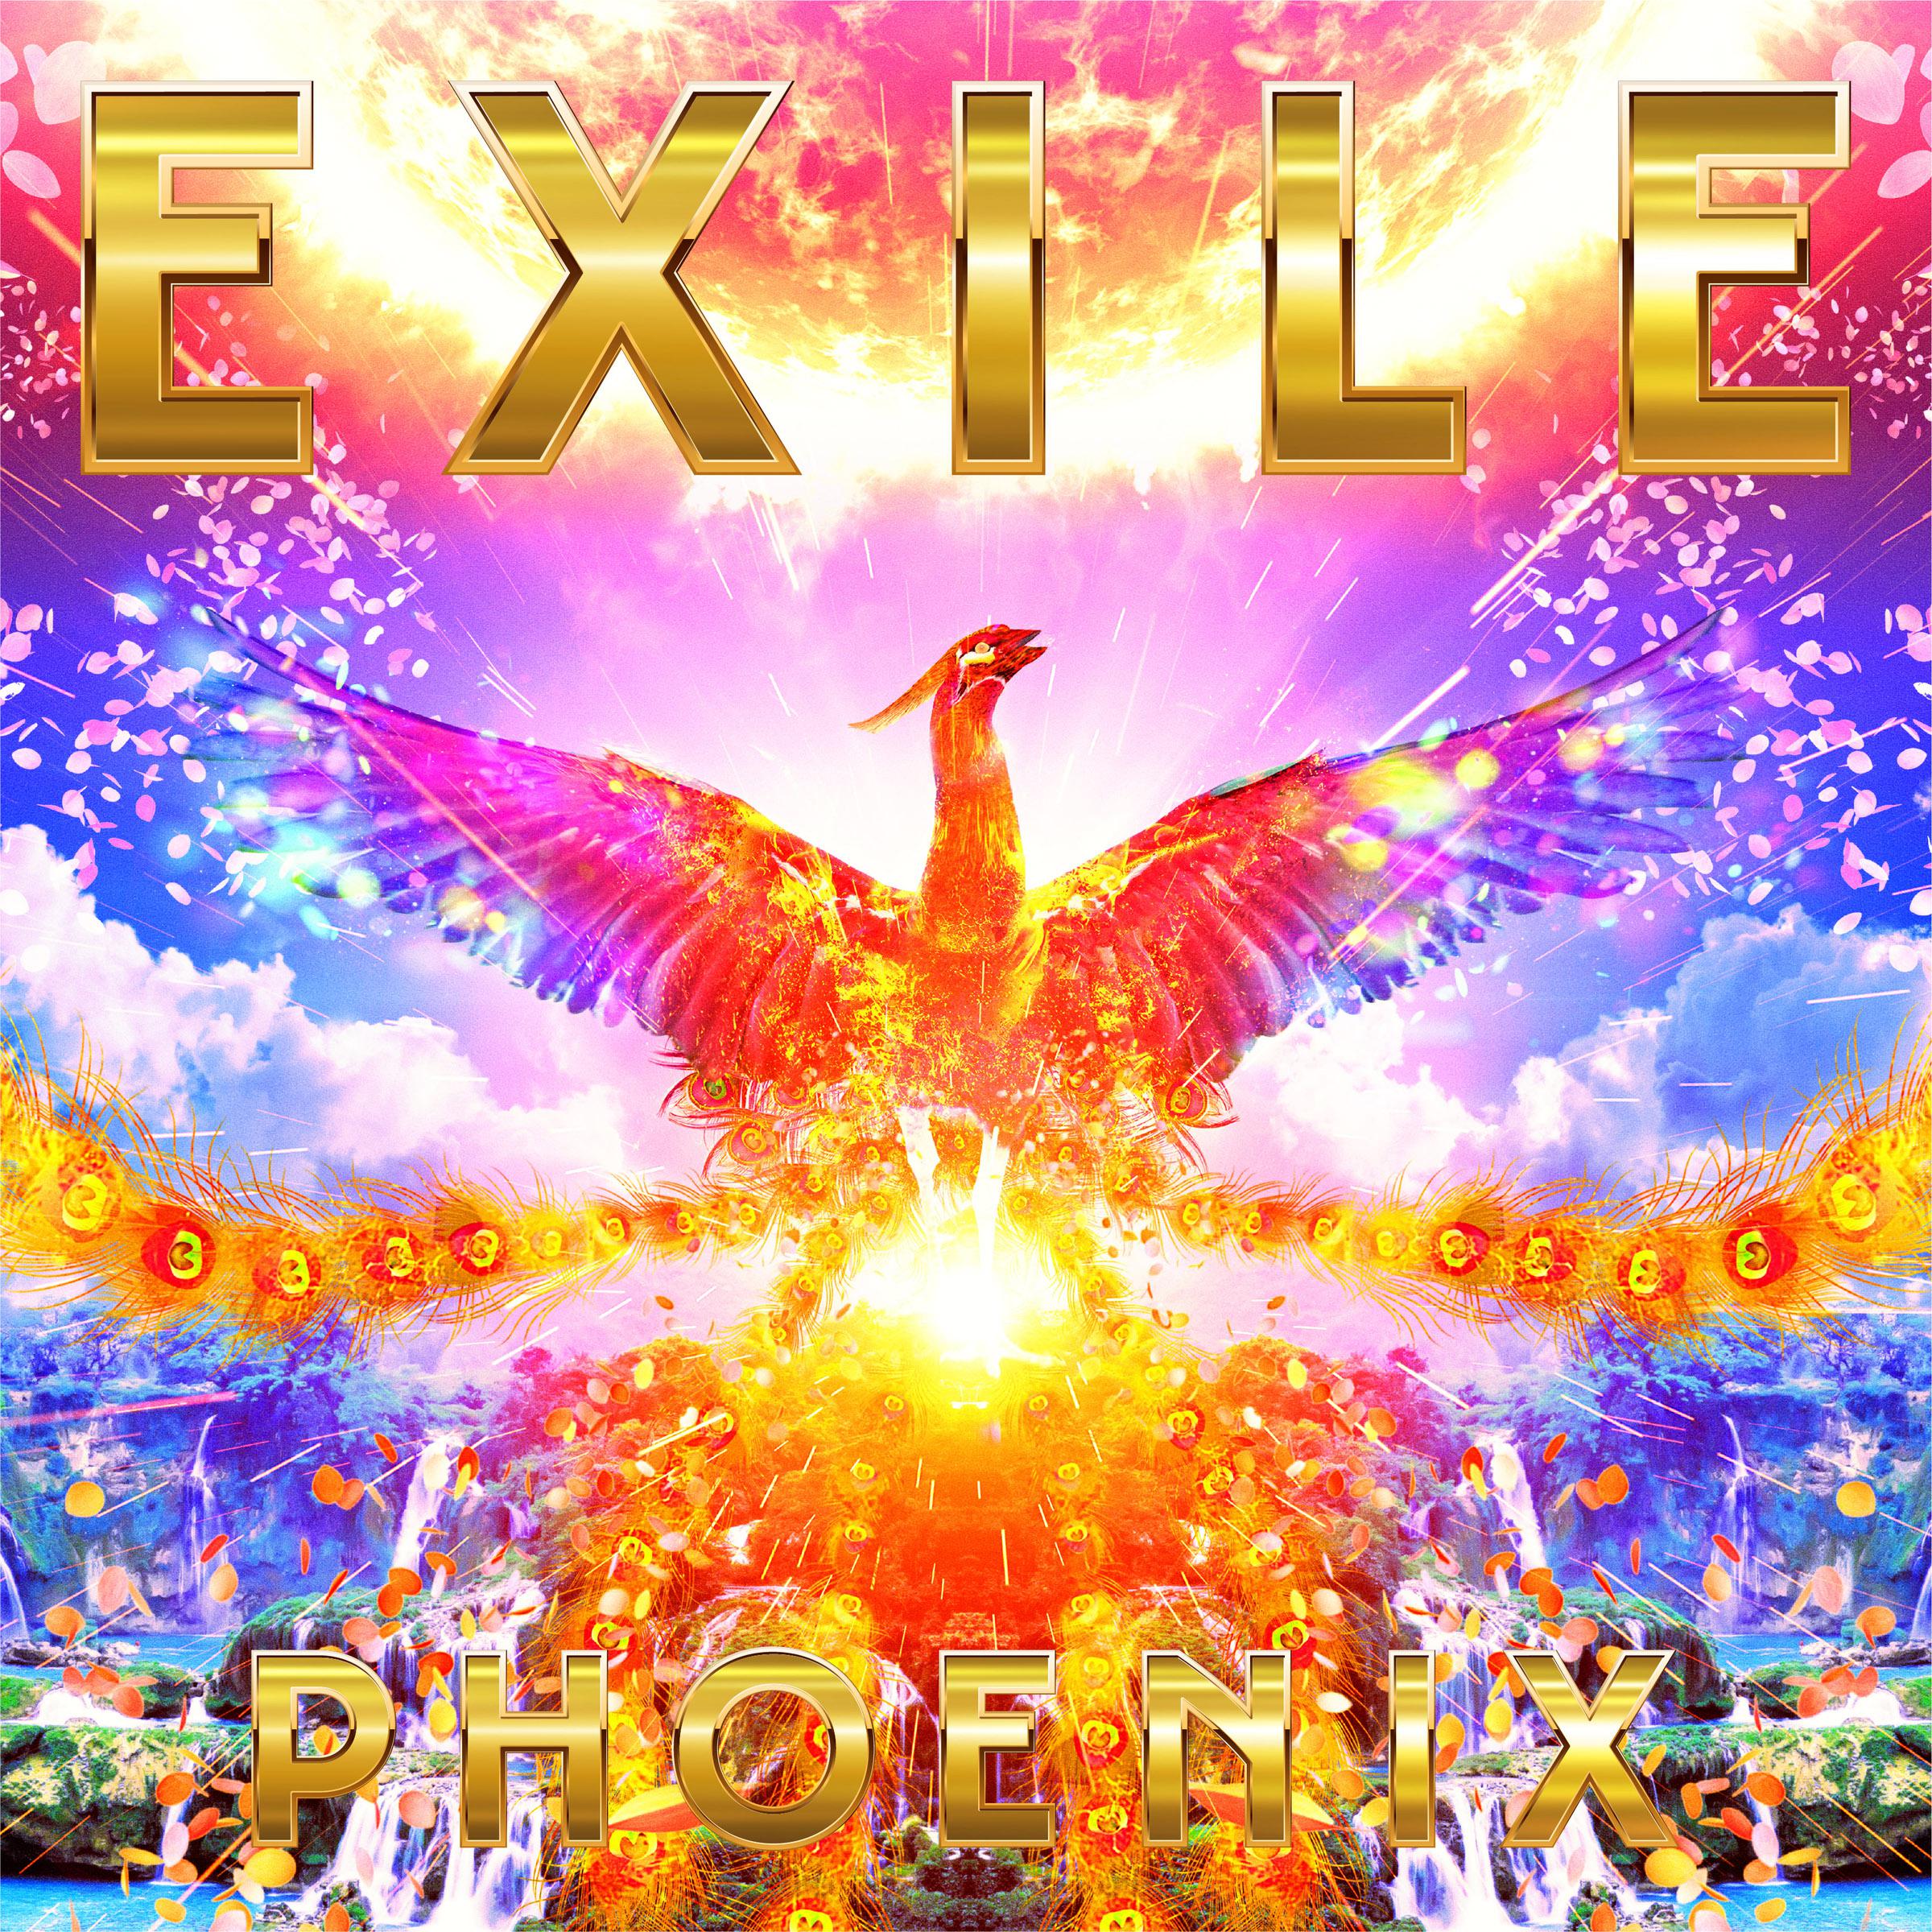 RED PHOENIX歌词 歌手EXILE-专辑PHOENIX-单曲《RED PHOENIX》LRC歌词下载